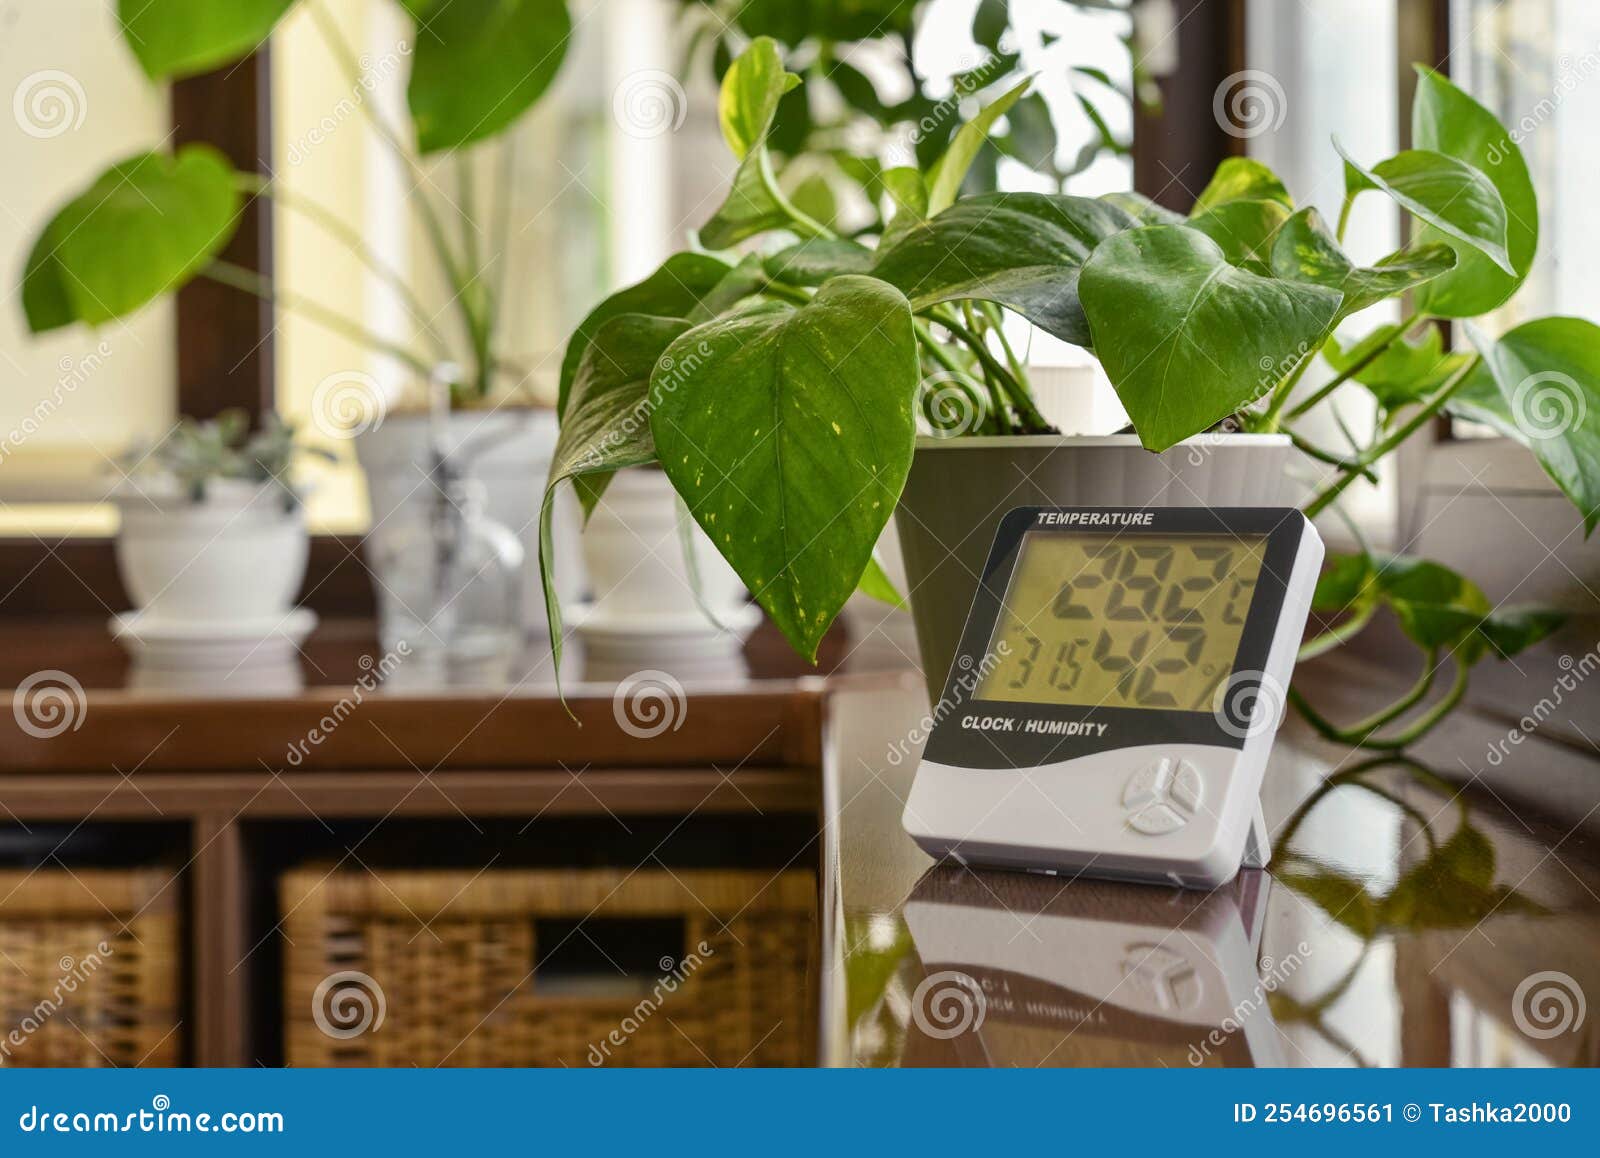 Higrómetro Termómetro Que Mide La Temperatura Y Humedad óptimas En Una Casa  Imagen de archivo - Imagen de lifestyle, planta: 254696561